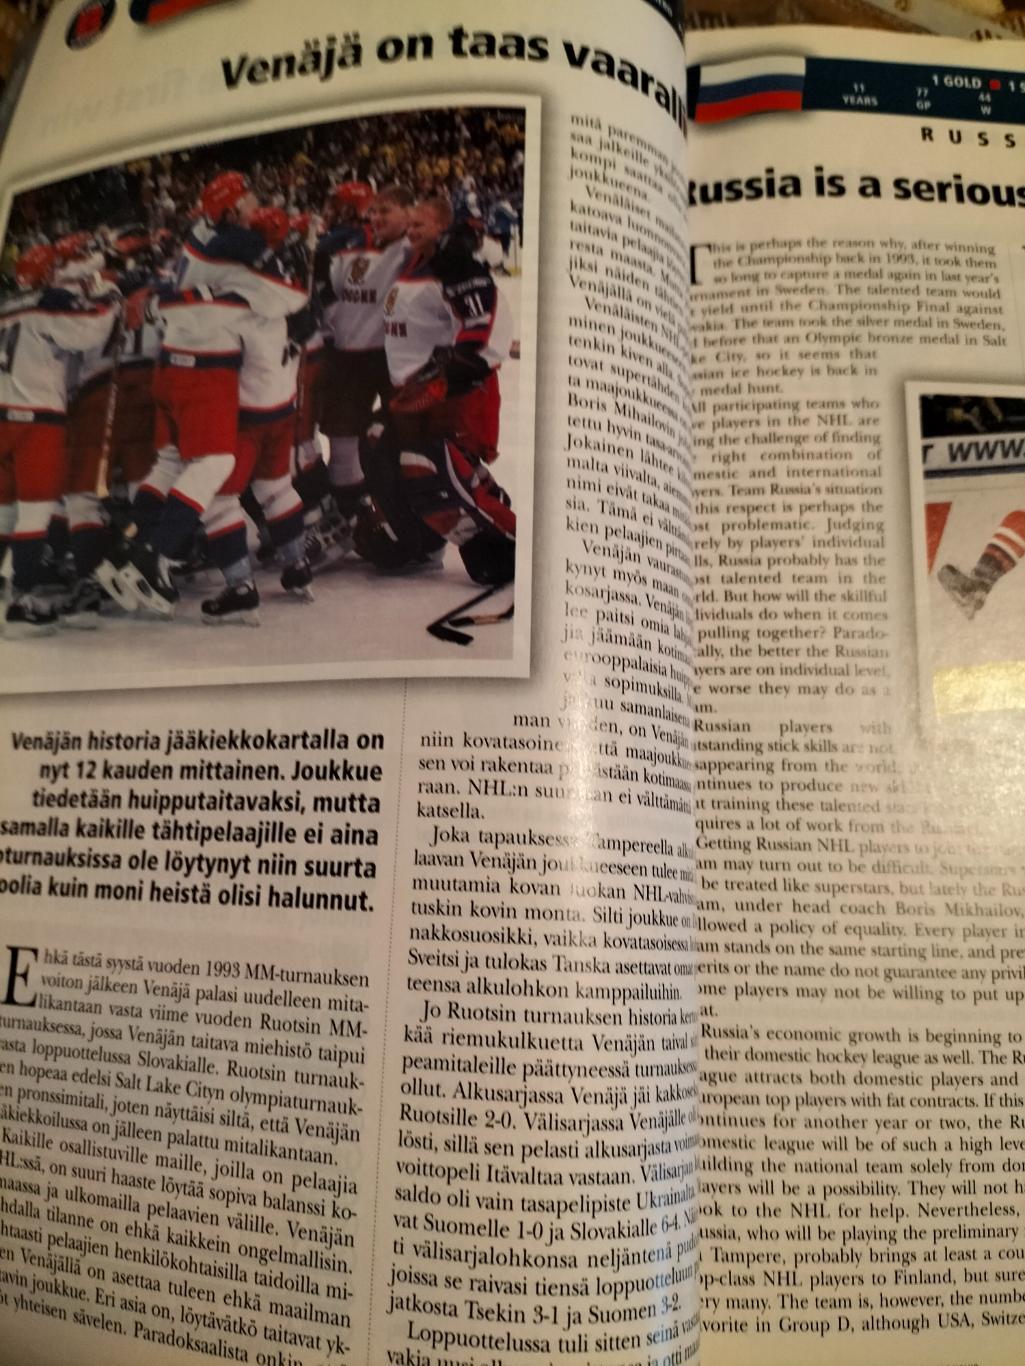 Официальная программа по хоккею 2003 год в Финляндии. 7